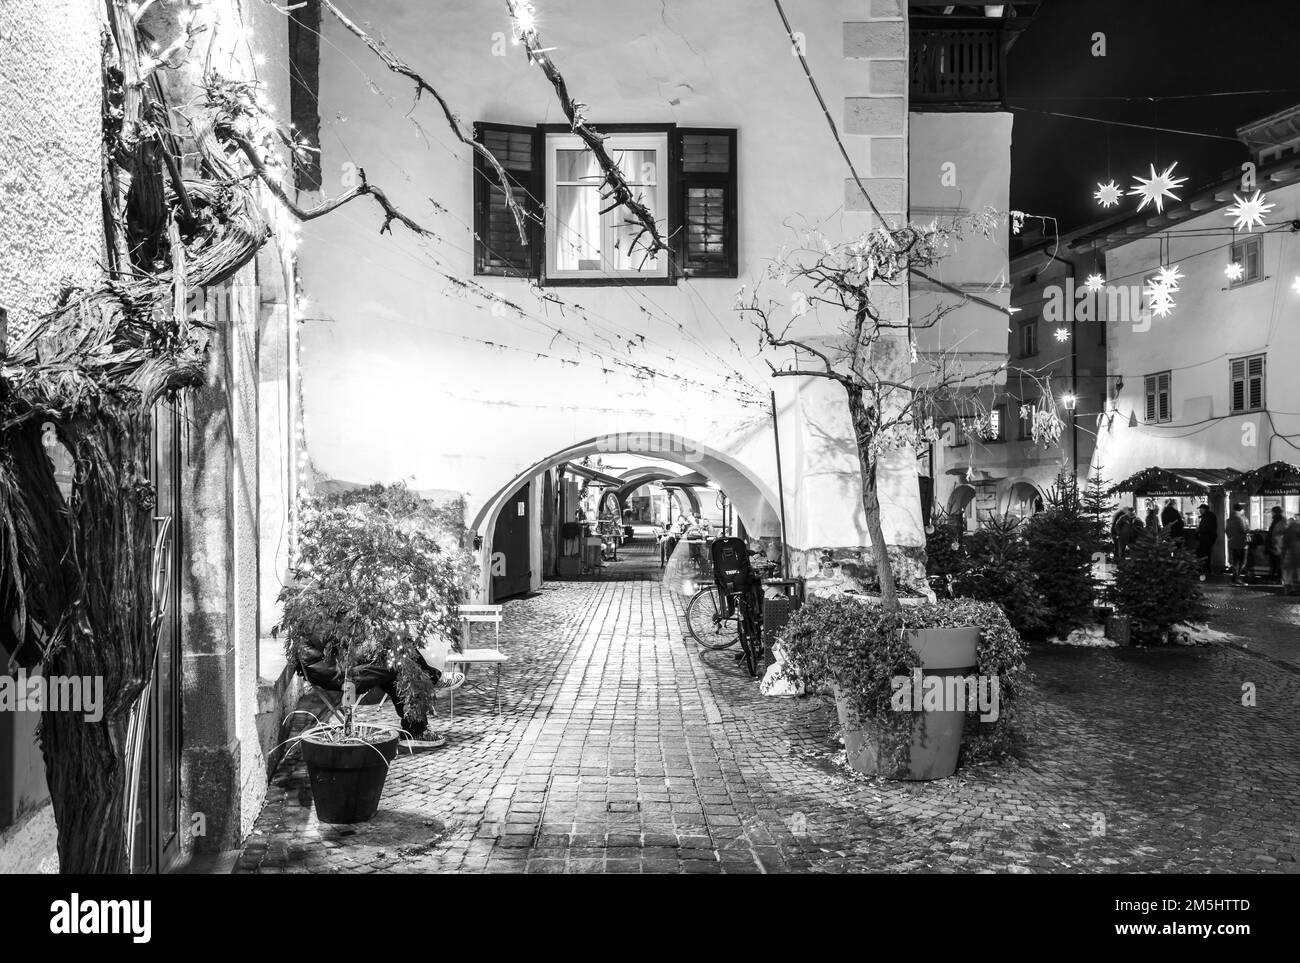 Egna in Südtirol (Neumarkt): Die berühmte Altstadt während des Weihnachtsfestes, Provinz Bozen, Norditalien, Europa - 22. dezember 2022 Stockfoto